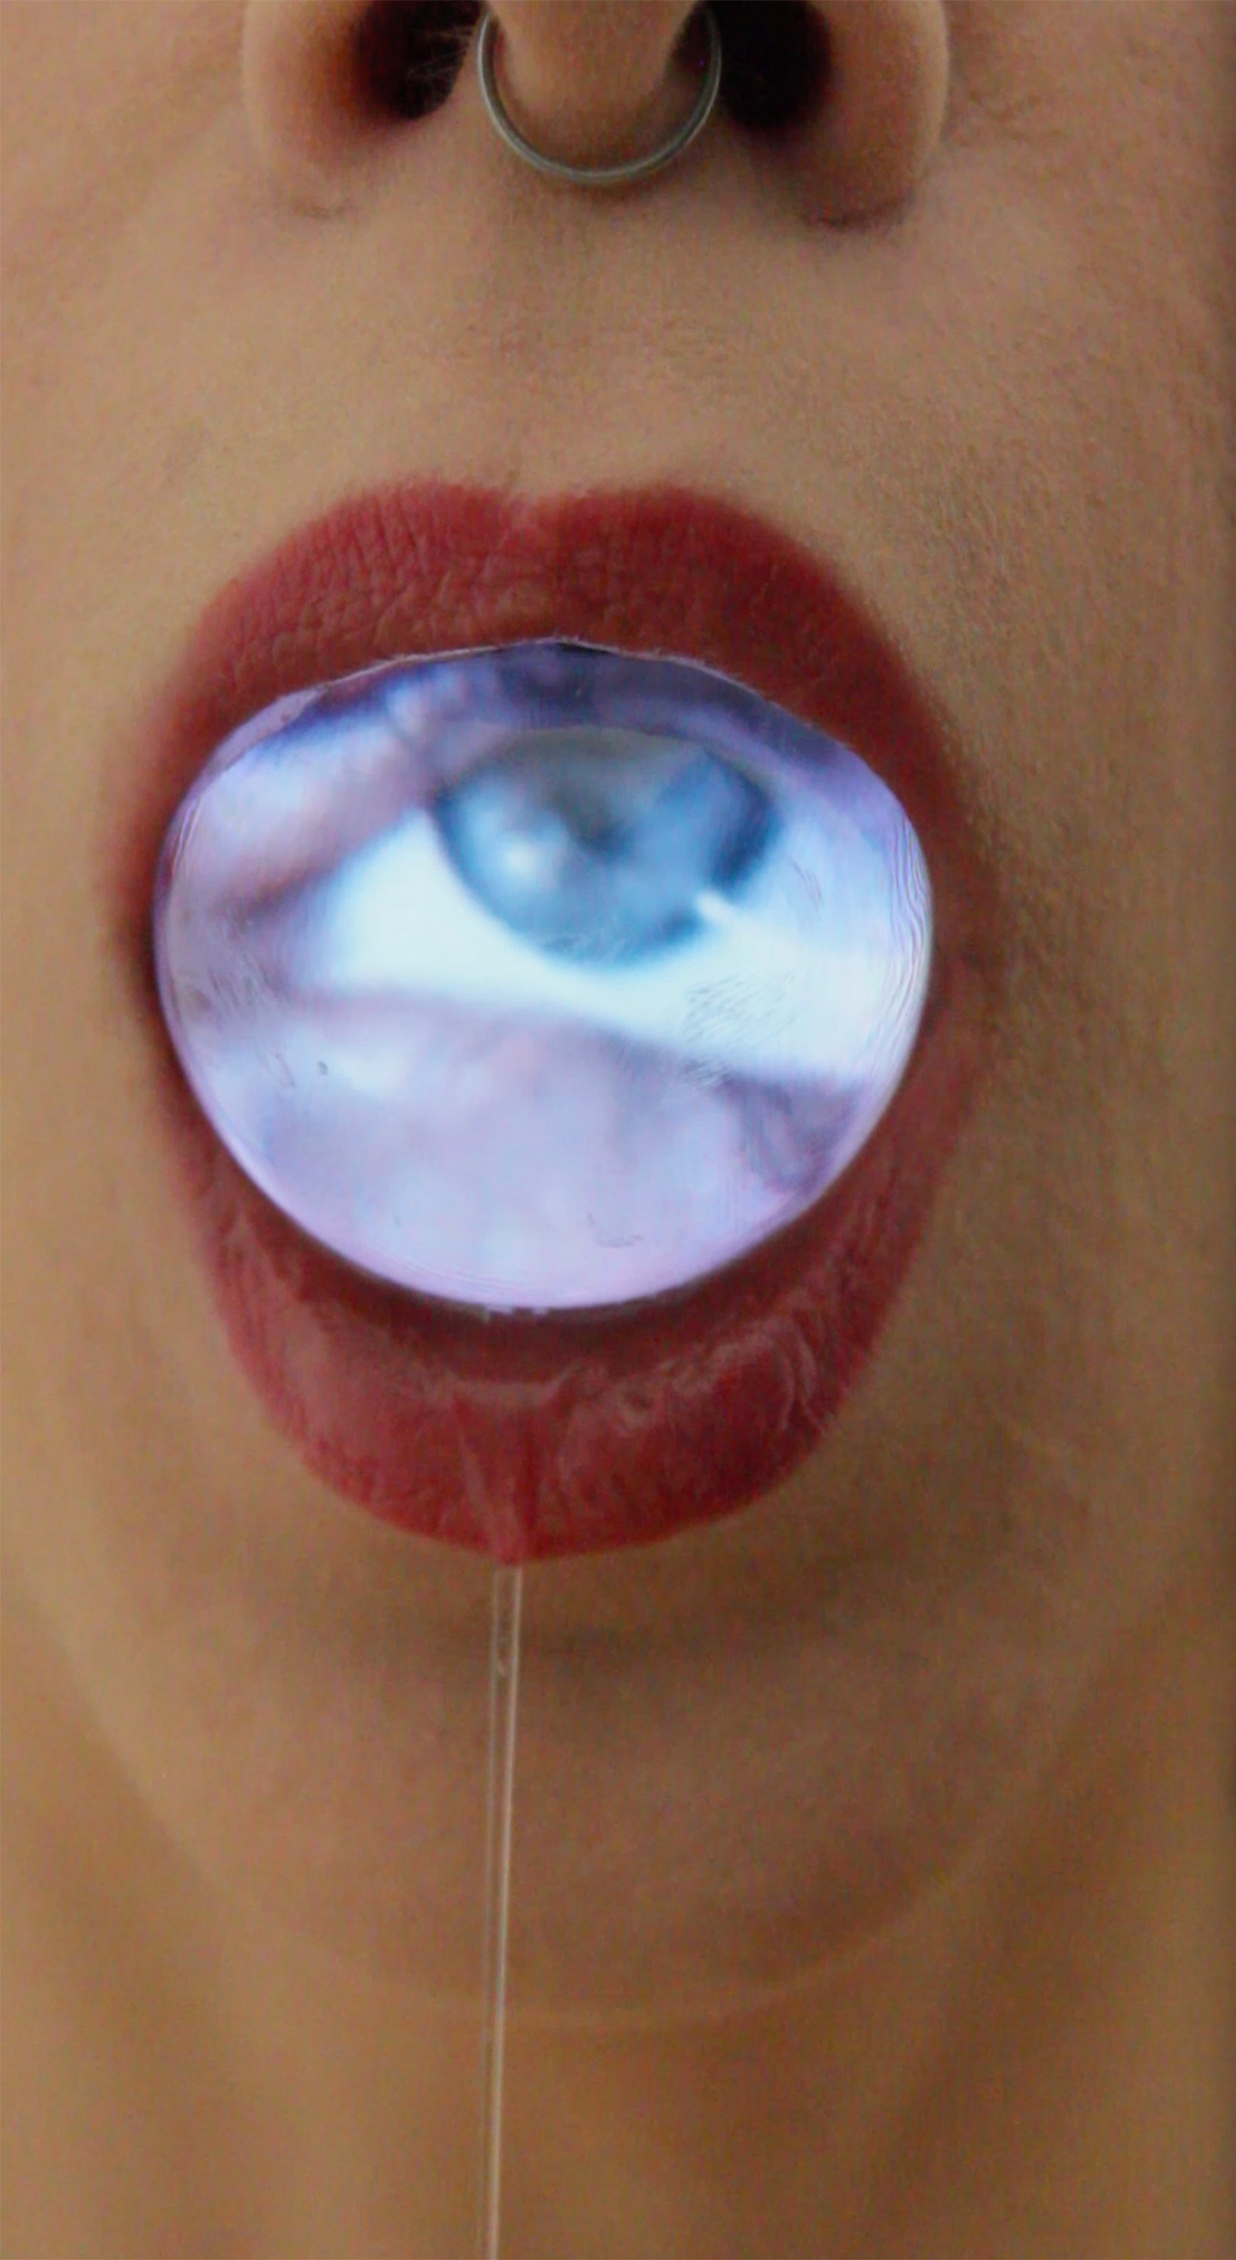 zbliżenie na usta pomalowane szminką, a w nich szklana kula o powierzchni ekranu, na której wyświetla się oko. Z ust wycieka strużka śliny.